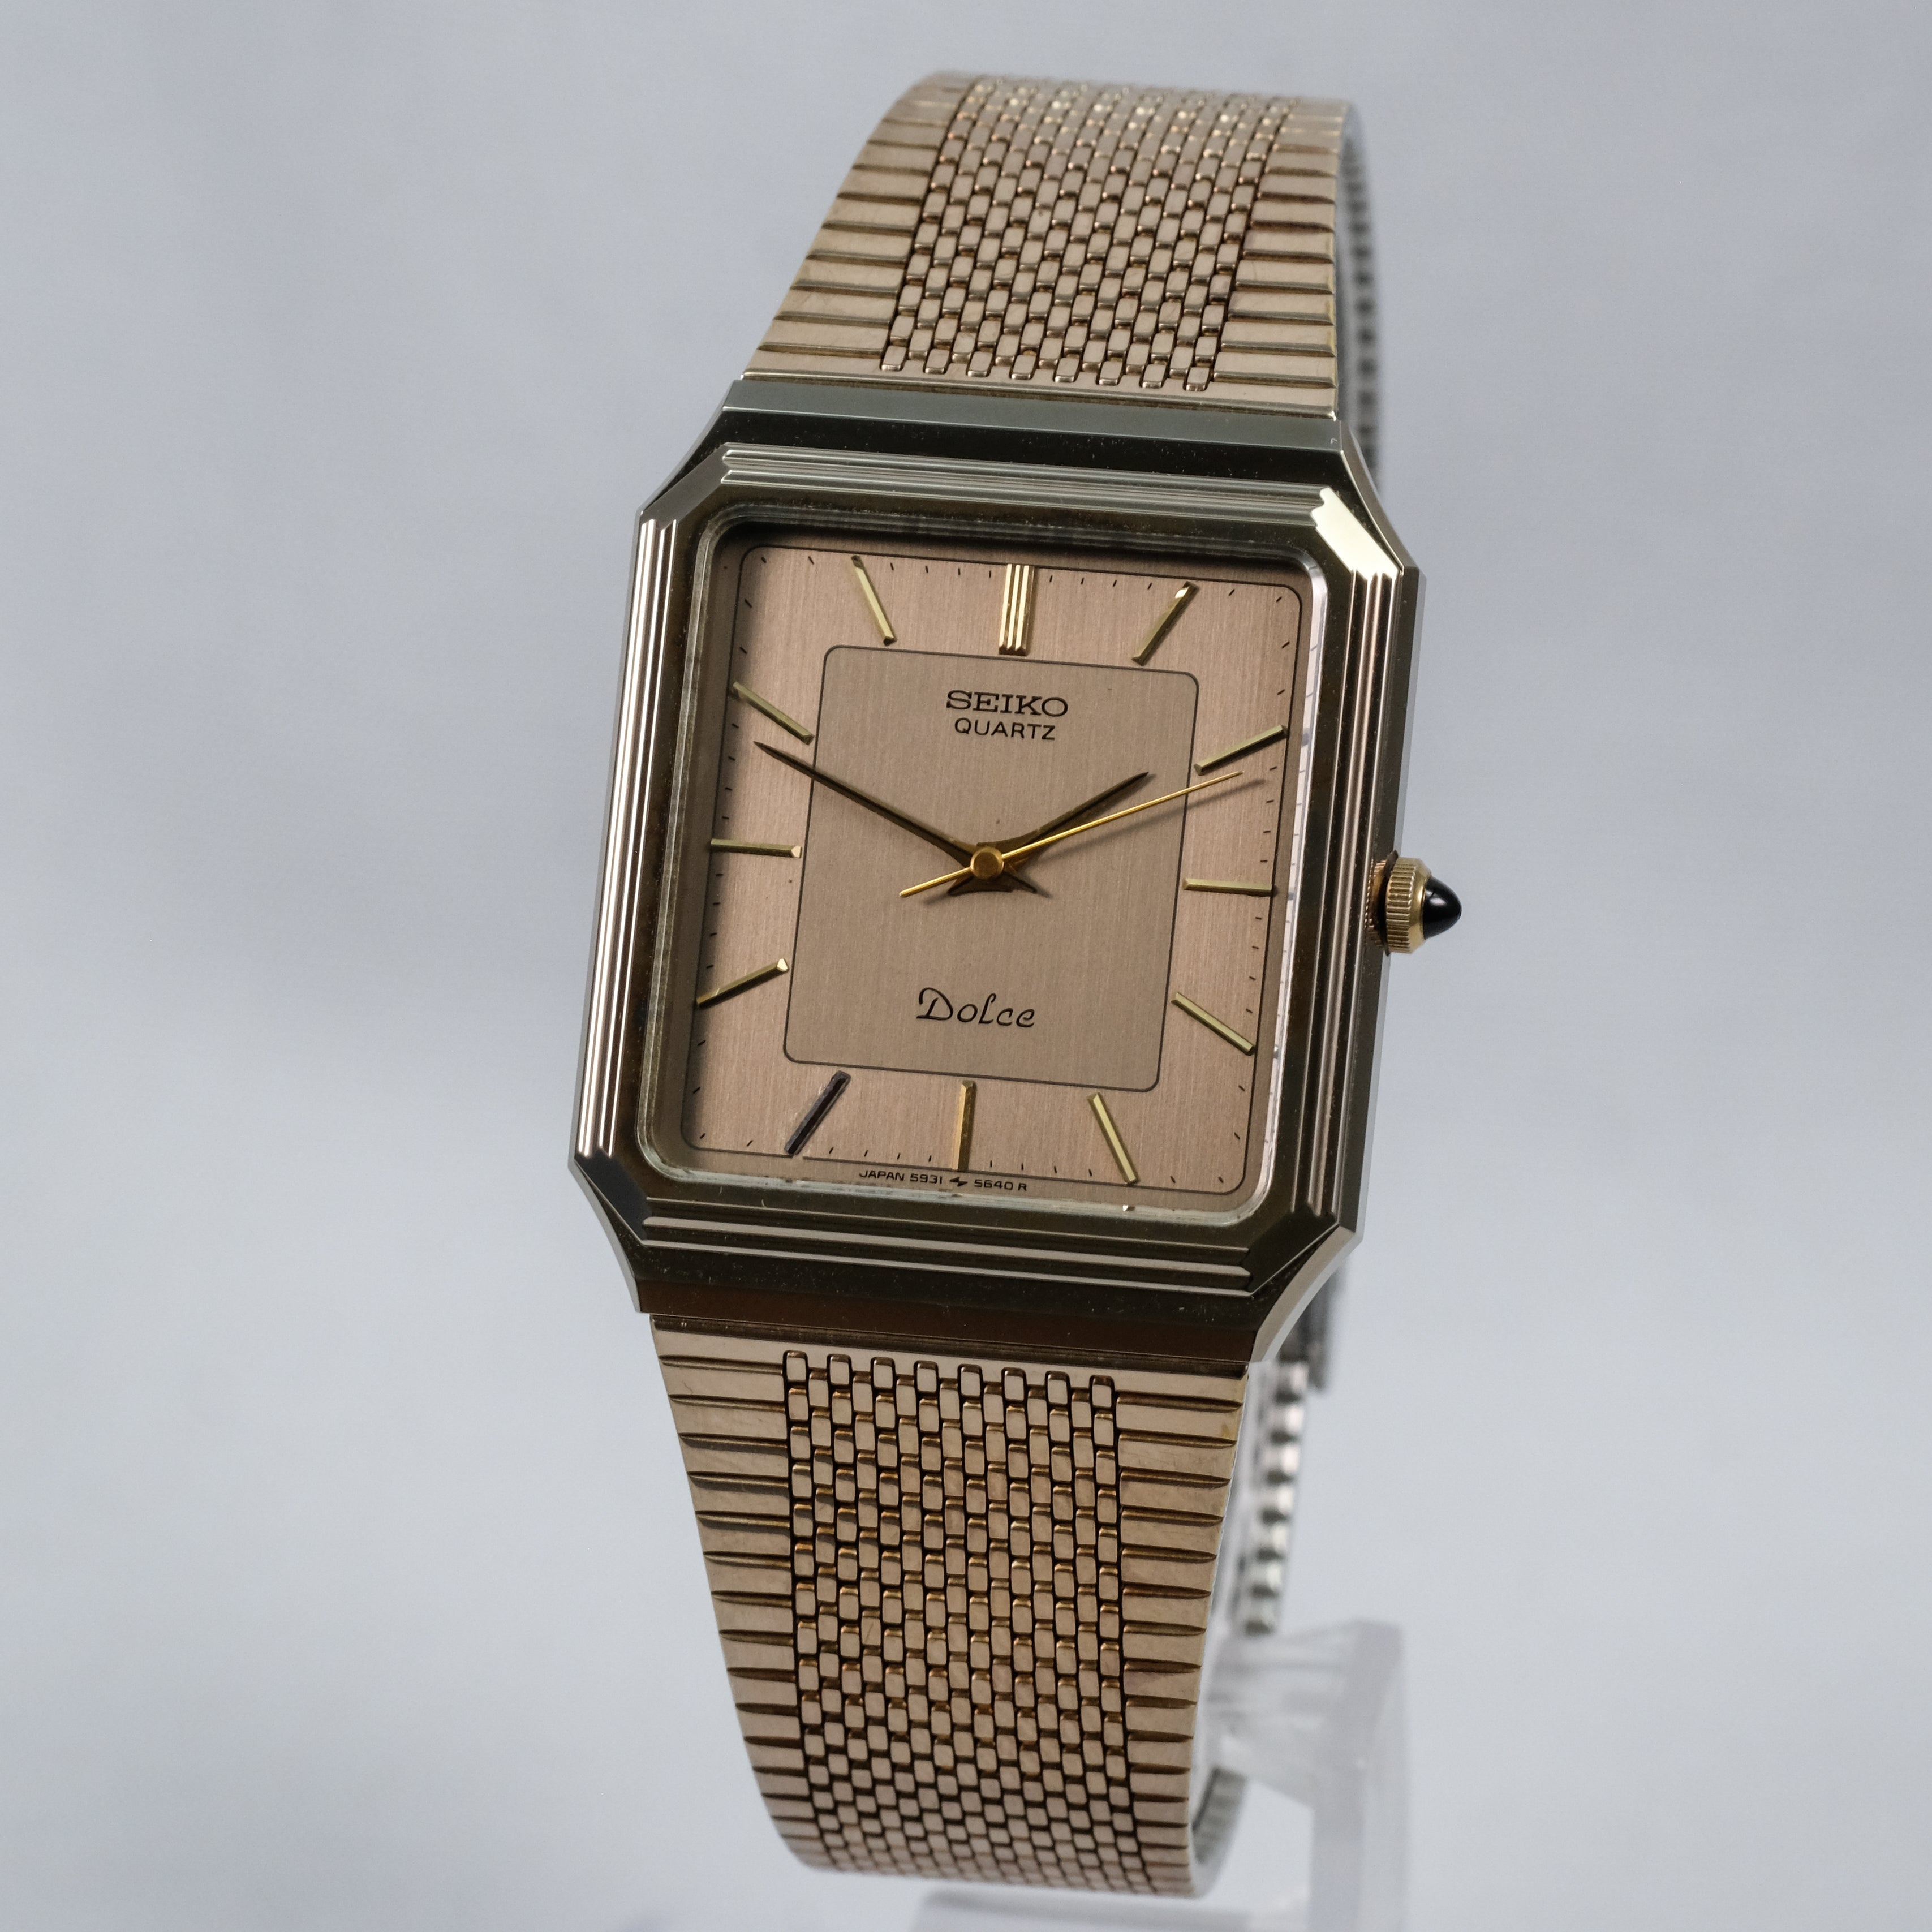 Vintage Seiko Quartz Watches – TokeiMedic